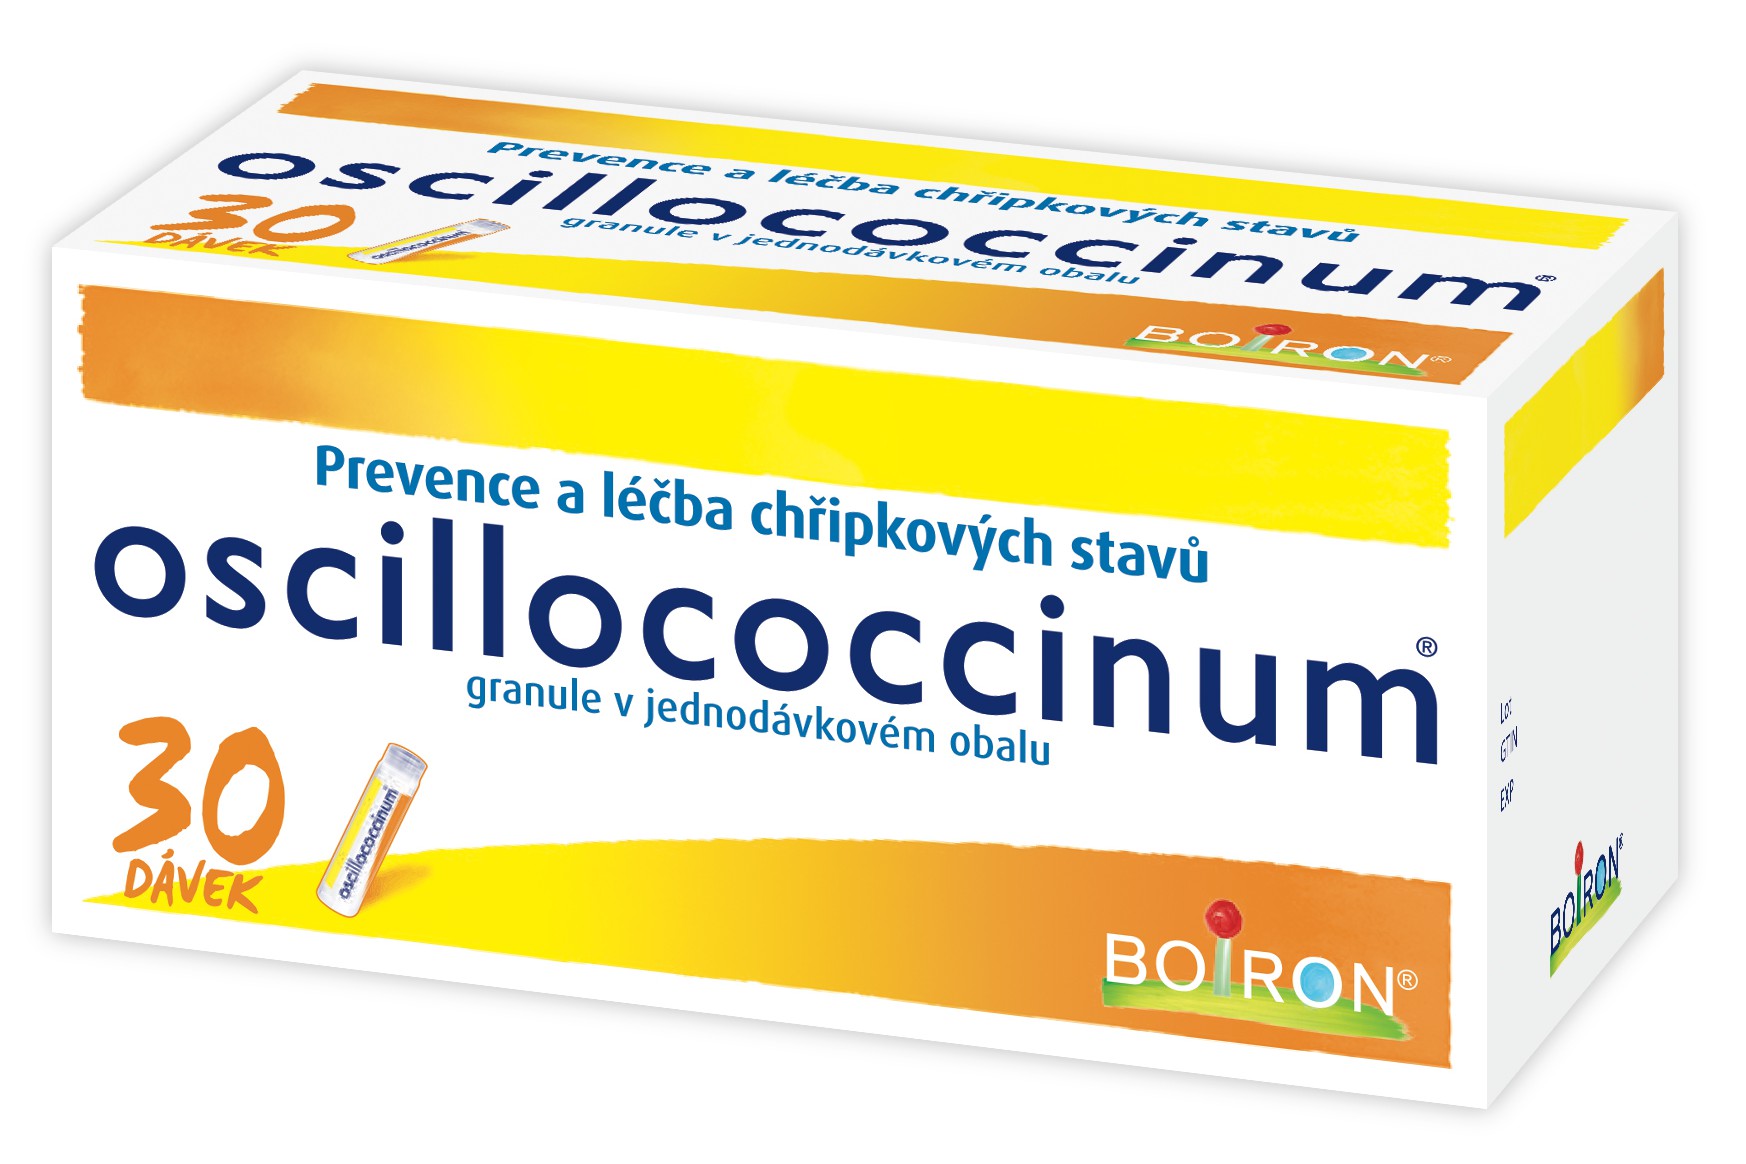 Oscillococcinum 30 P 2019-10